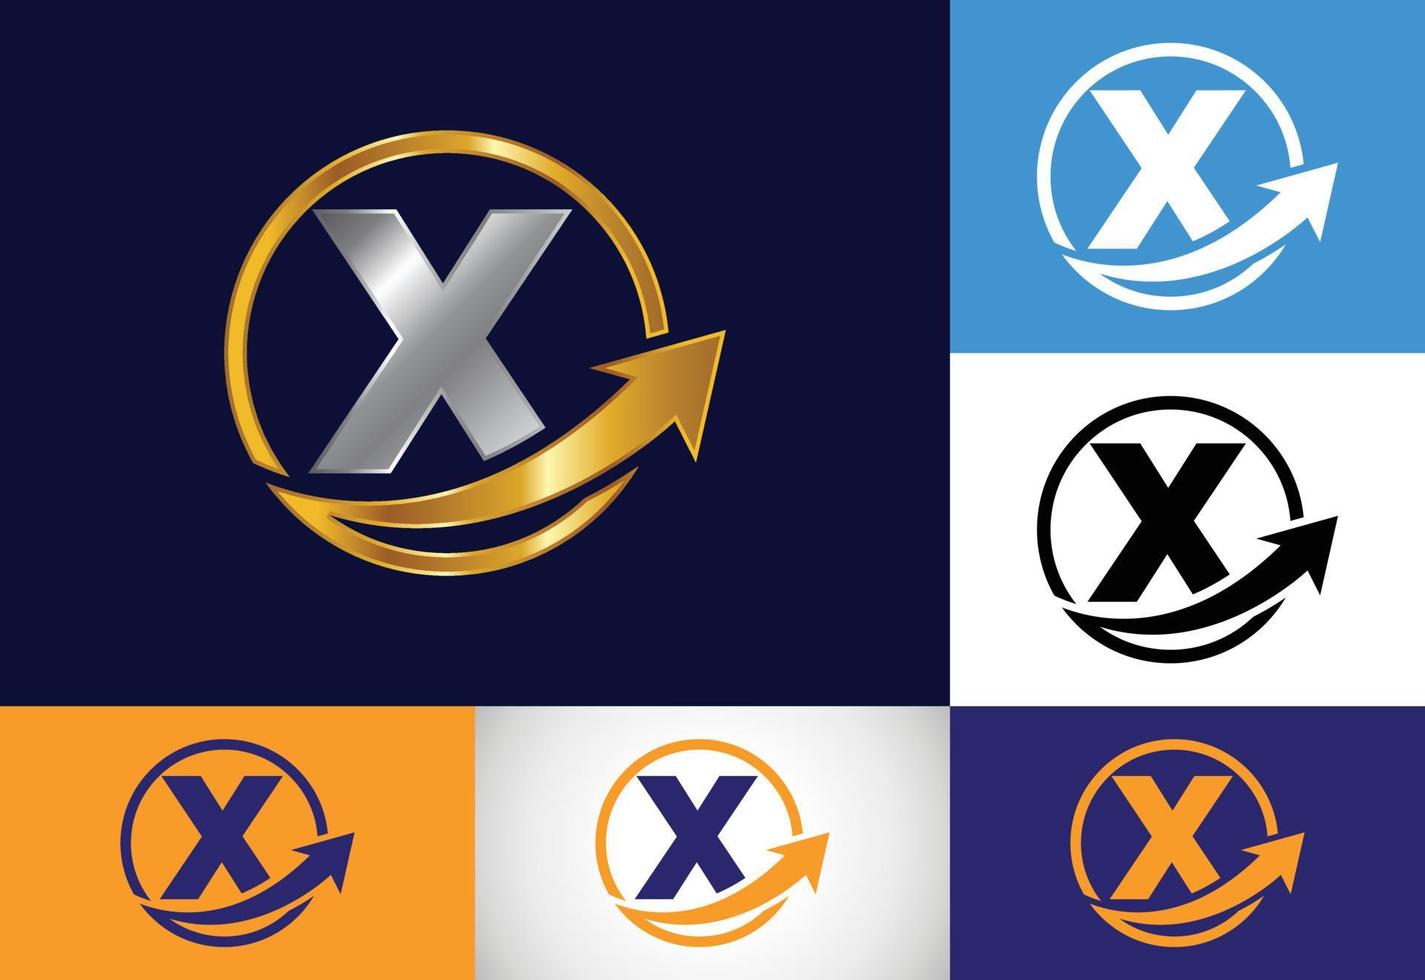 diseño inicial del símbolo del alfabeto del monograma x incorporado con la flecha. concepto de logotipo financiero o de éxito. emblema de fuente logotipo para la identidad empresarial y empresarial vector